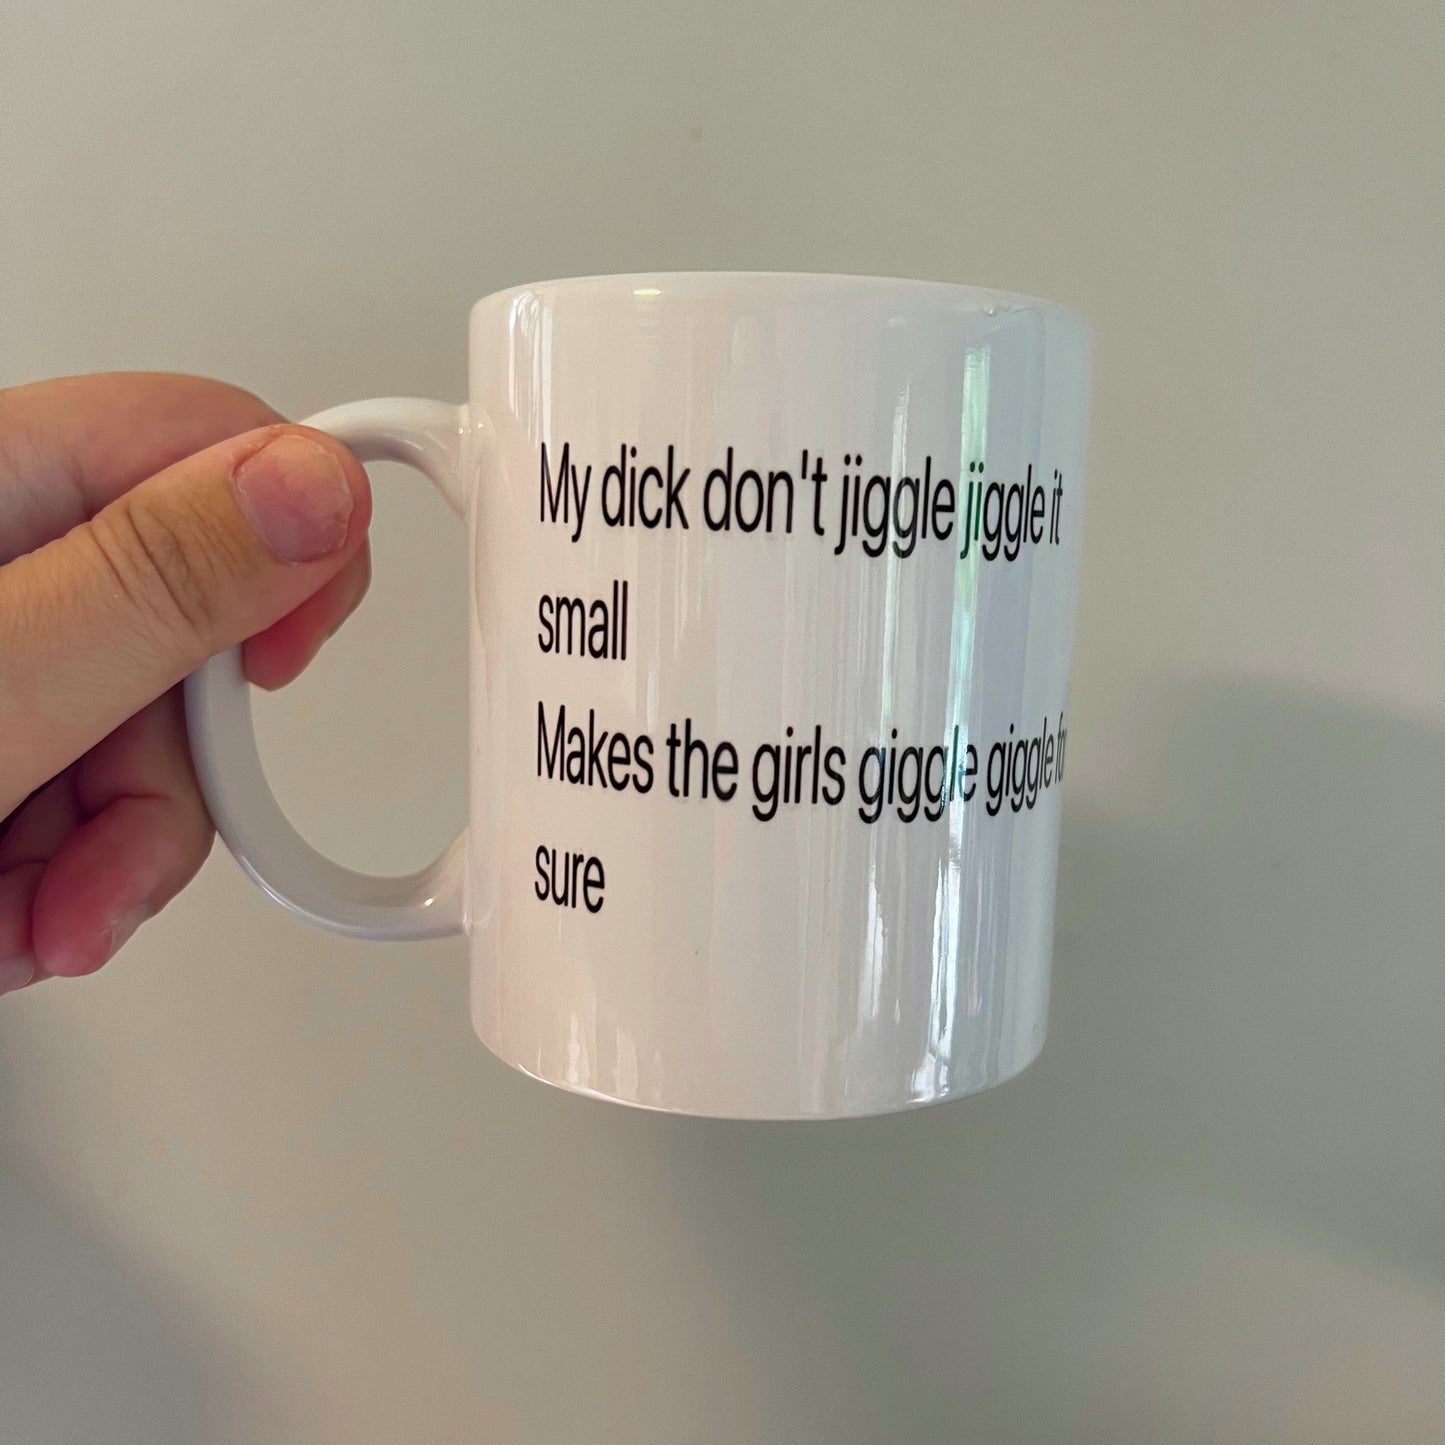 Jiggle jiggle mug